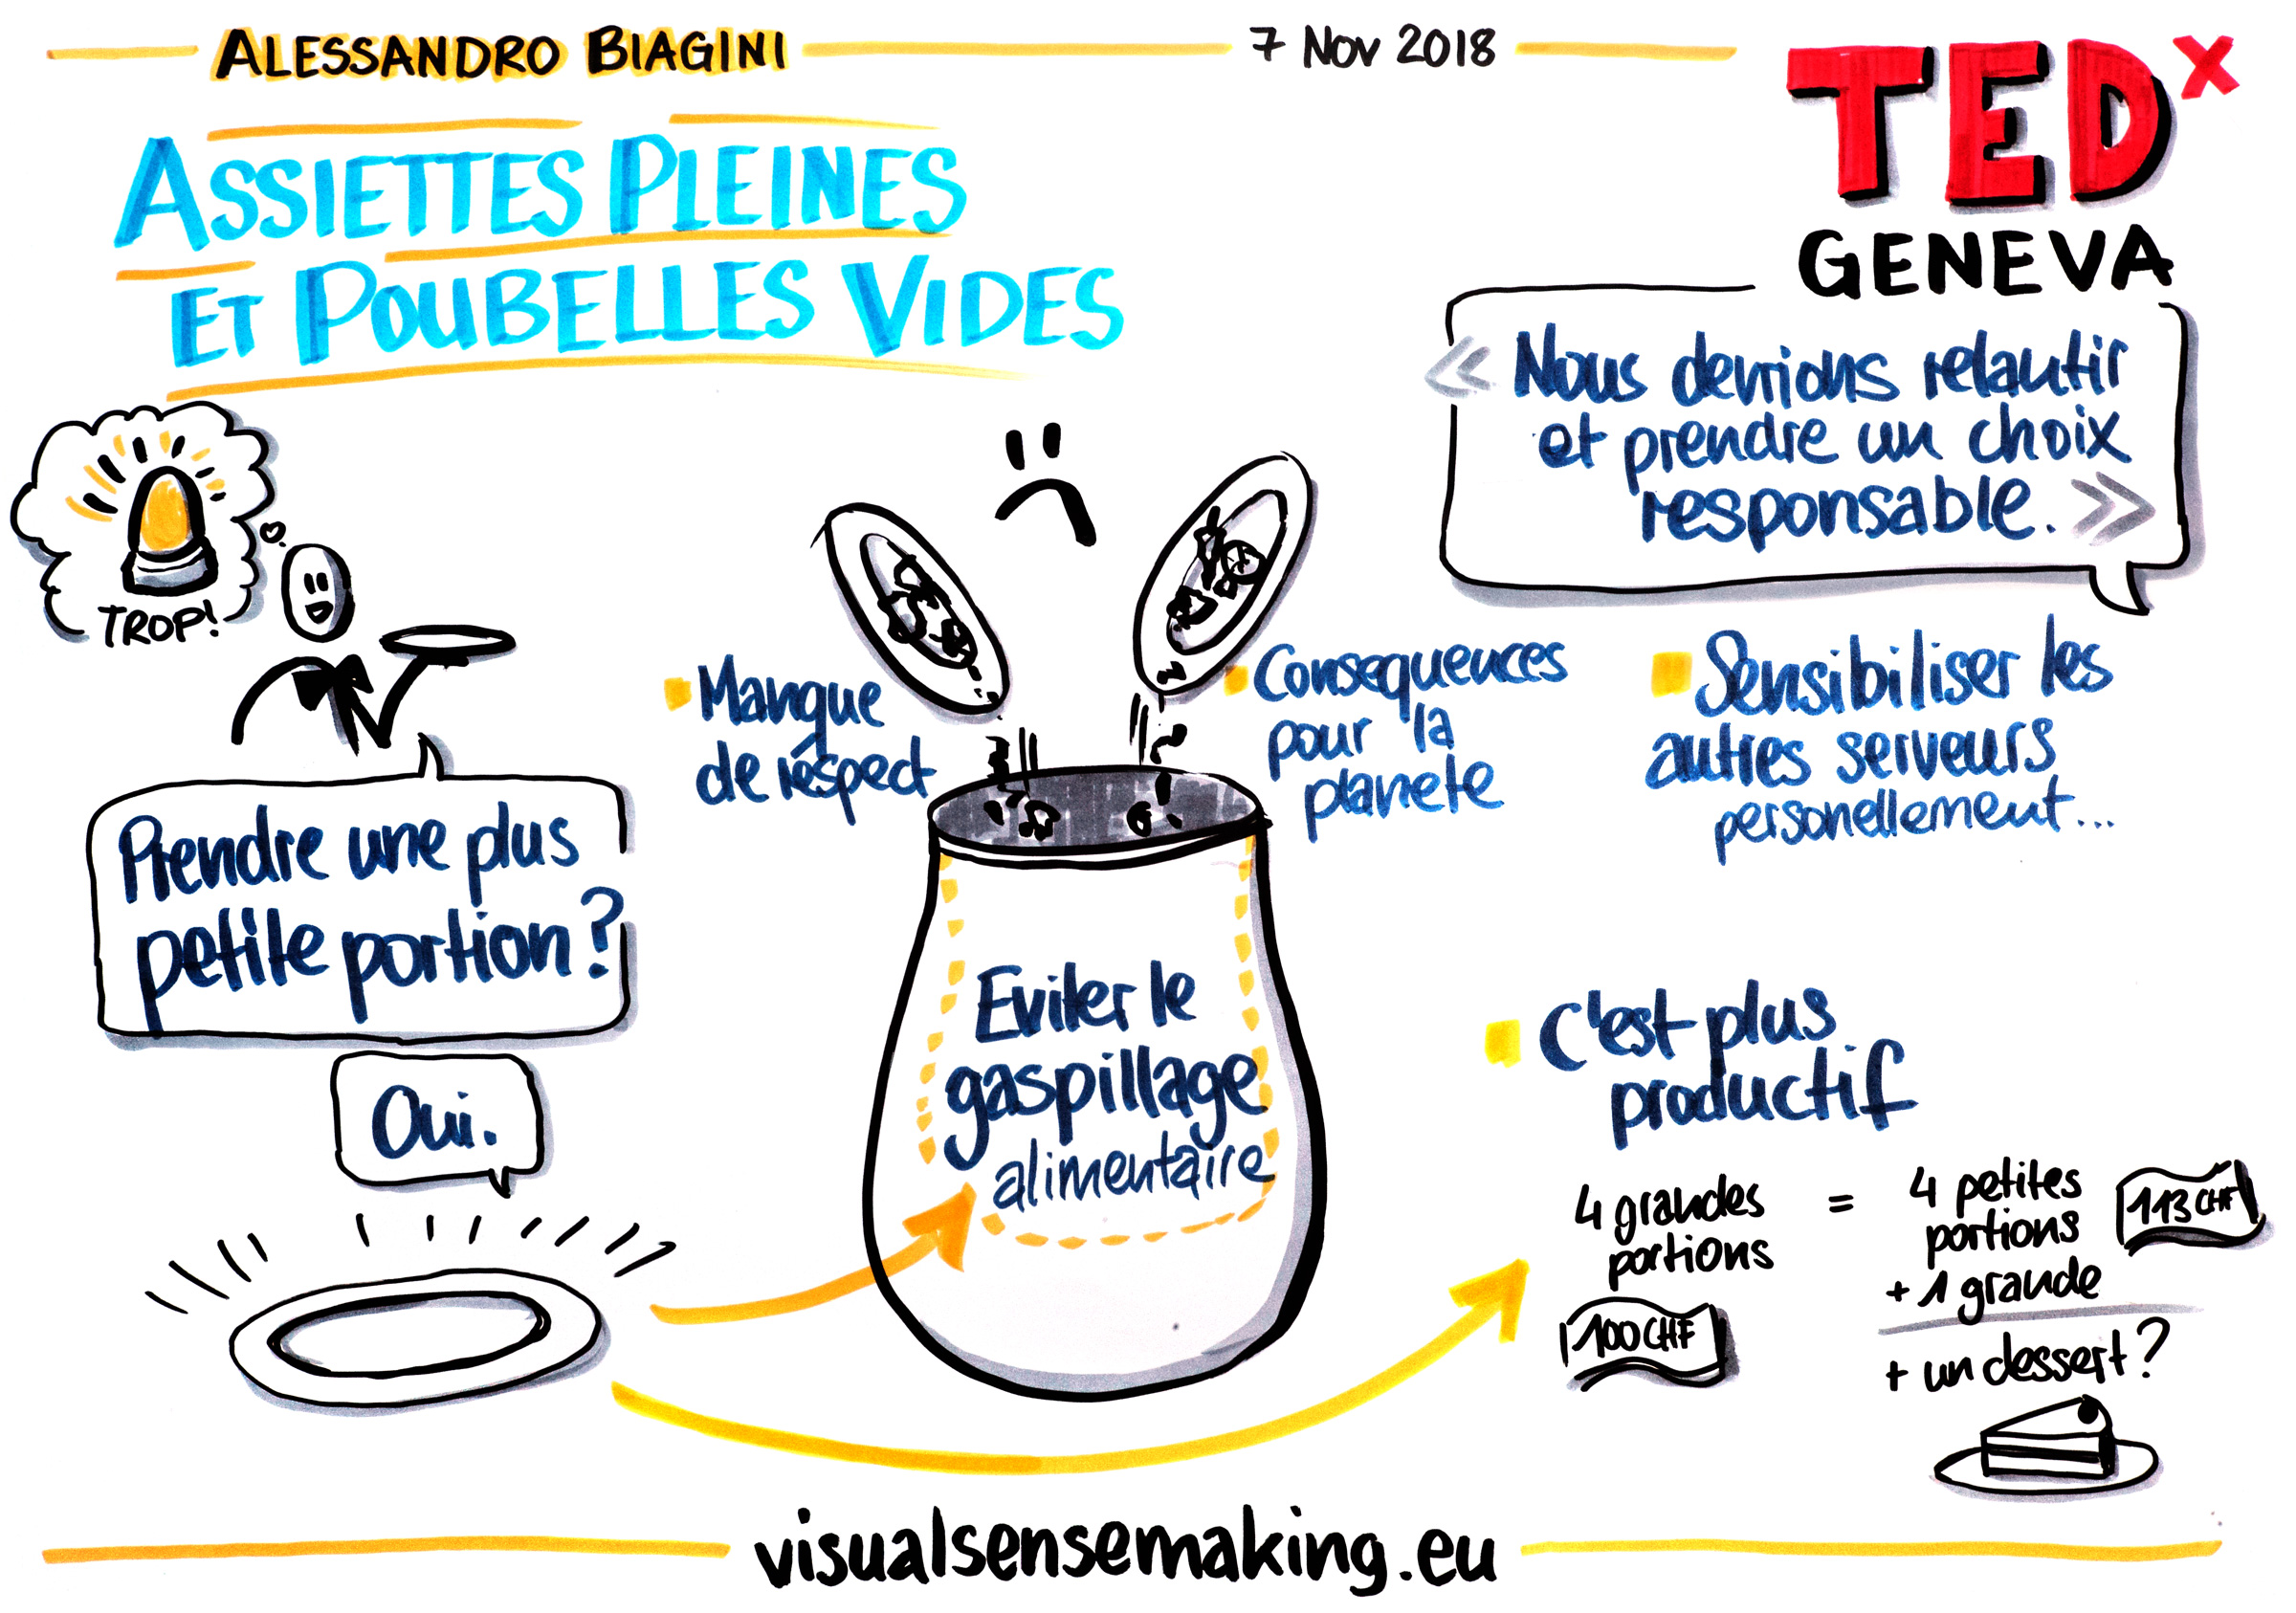 Visual summary of the talk 'Assiettes pleines et poubelles vides'